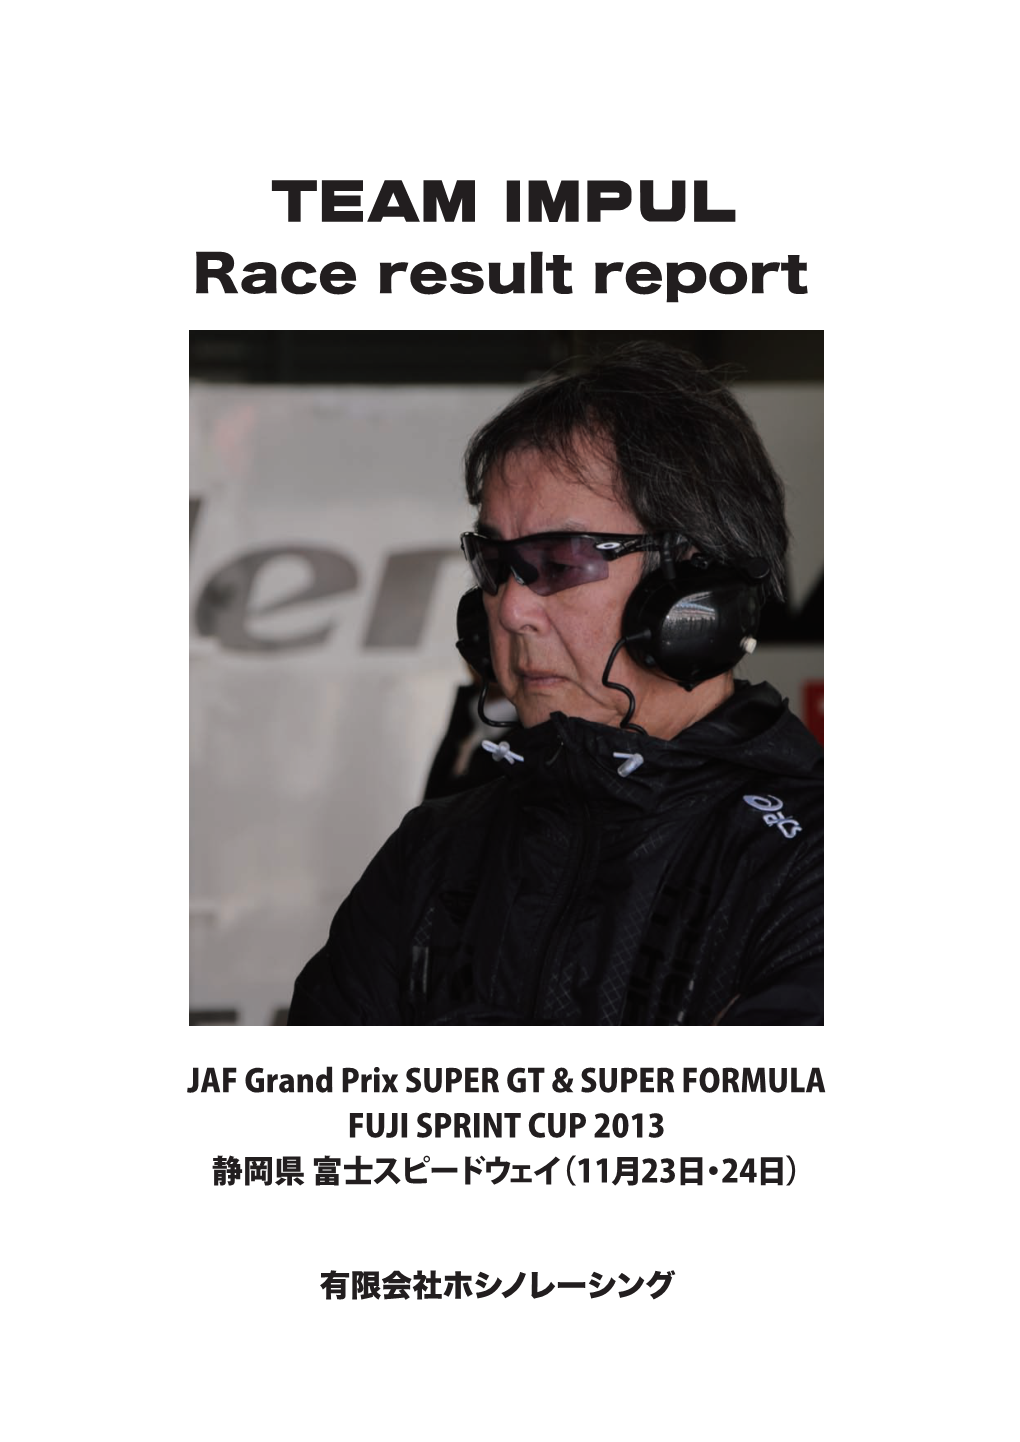 Jaf Gp Fuji Sprint Cup 2013 11.22～24